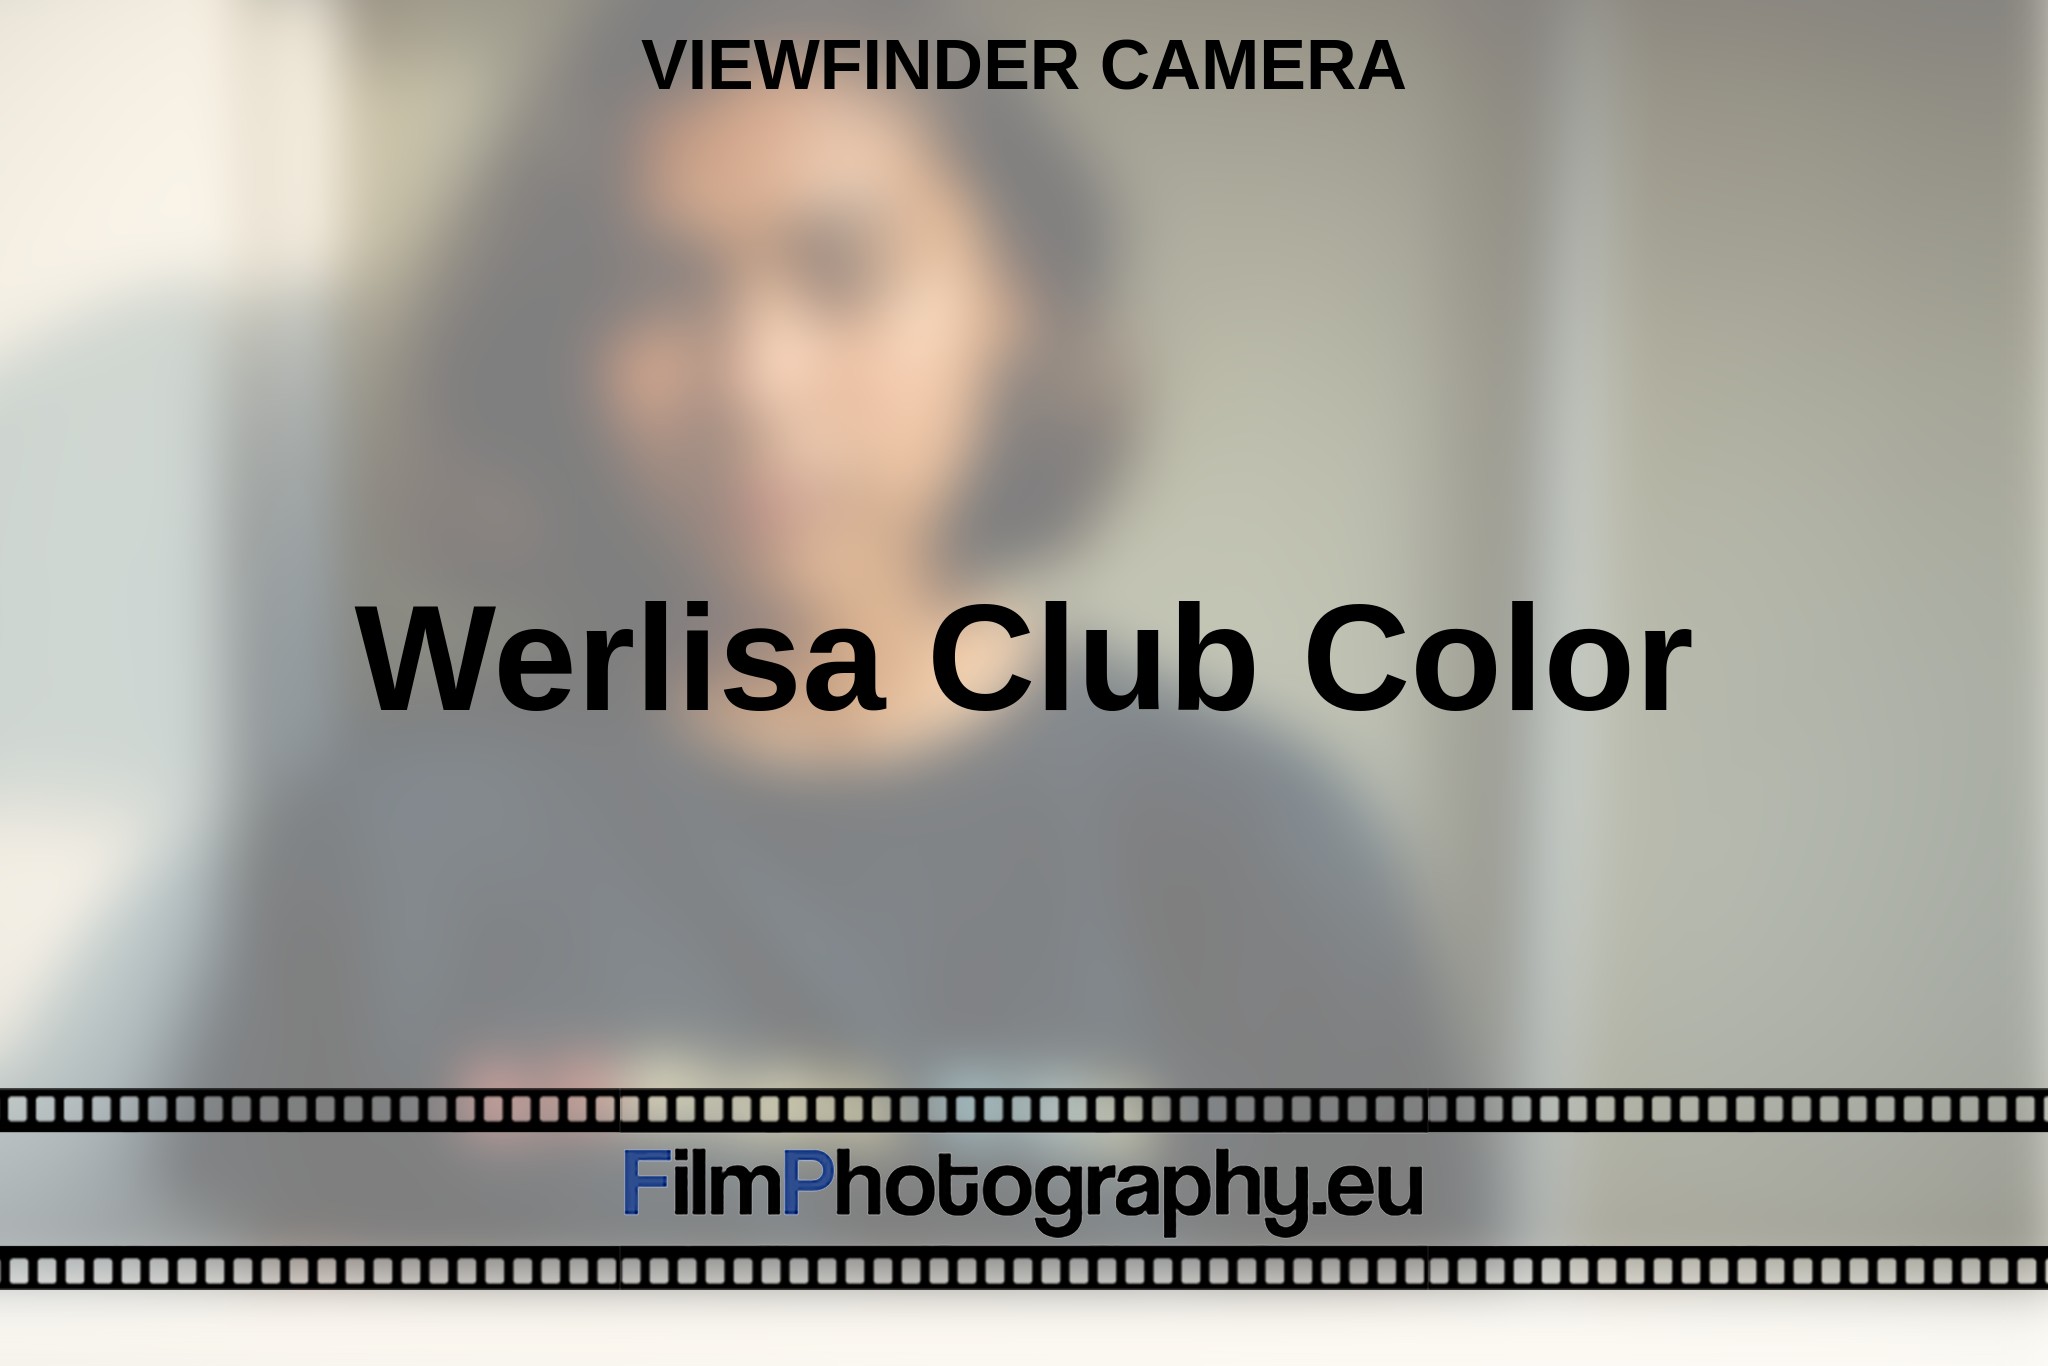 werlisa-club-color-viewfinder-camera-en-bnv.jpg